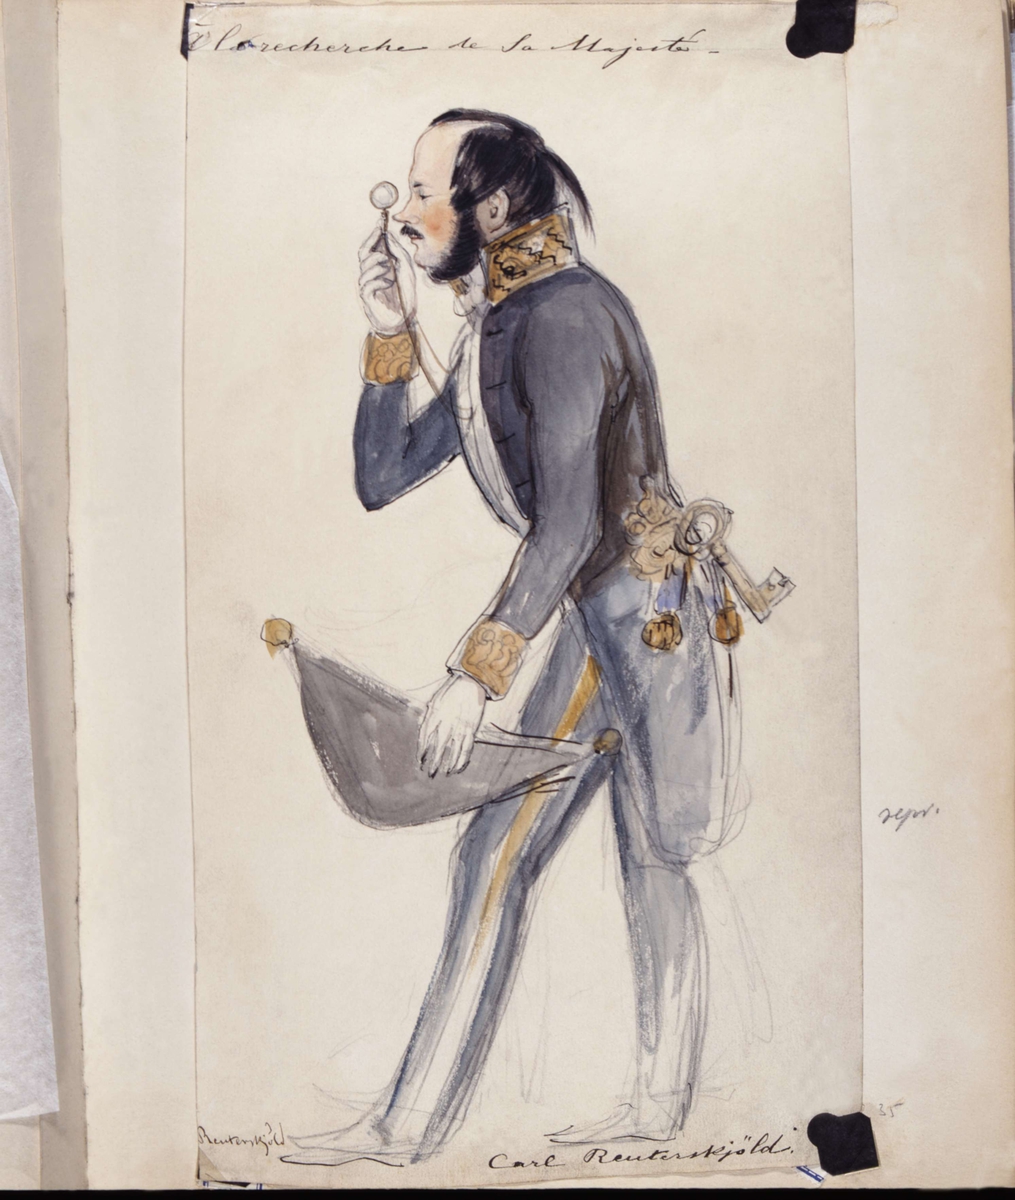 "Á la recherche de Sa Majesté". (Otydligt i originalet). Carl Reuterskjöld i uniform med monokel. Akvarell av Fritz von Dardel.